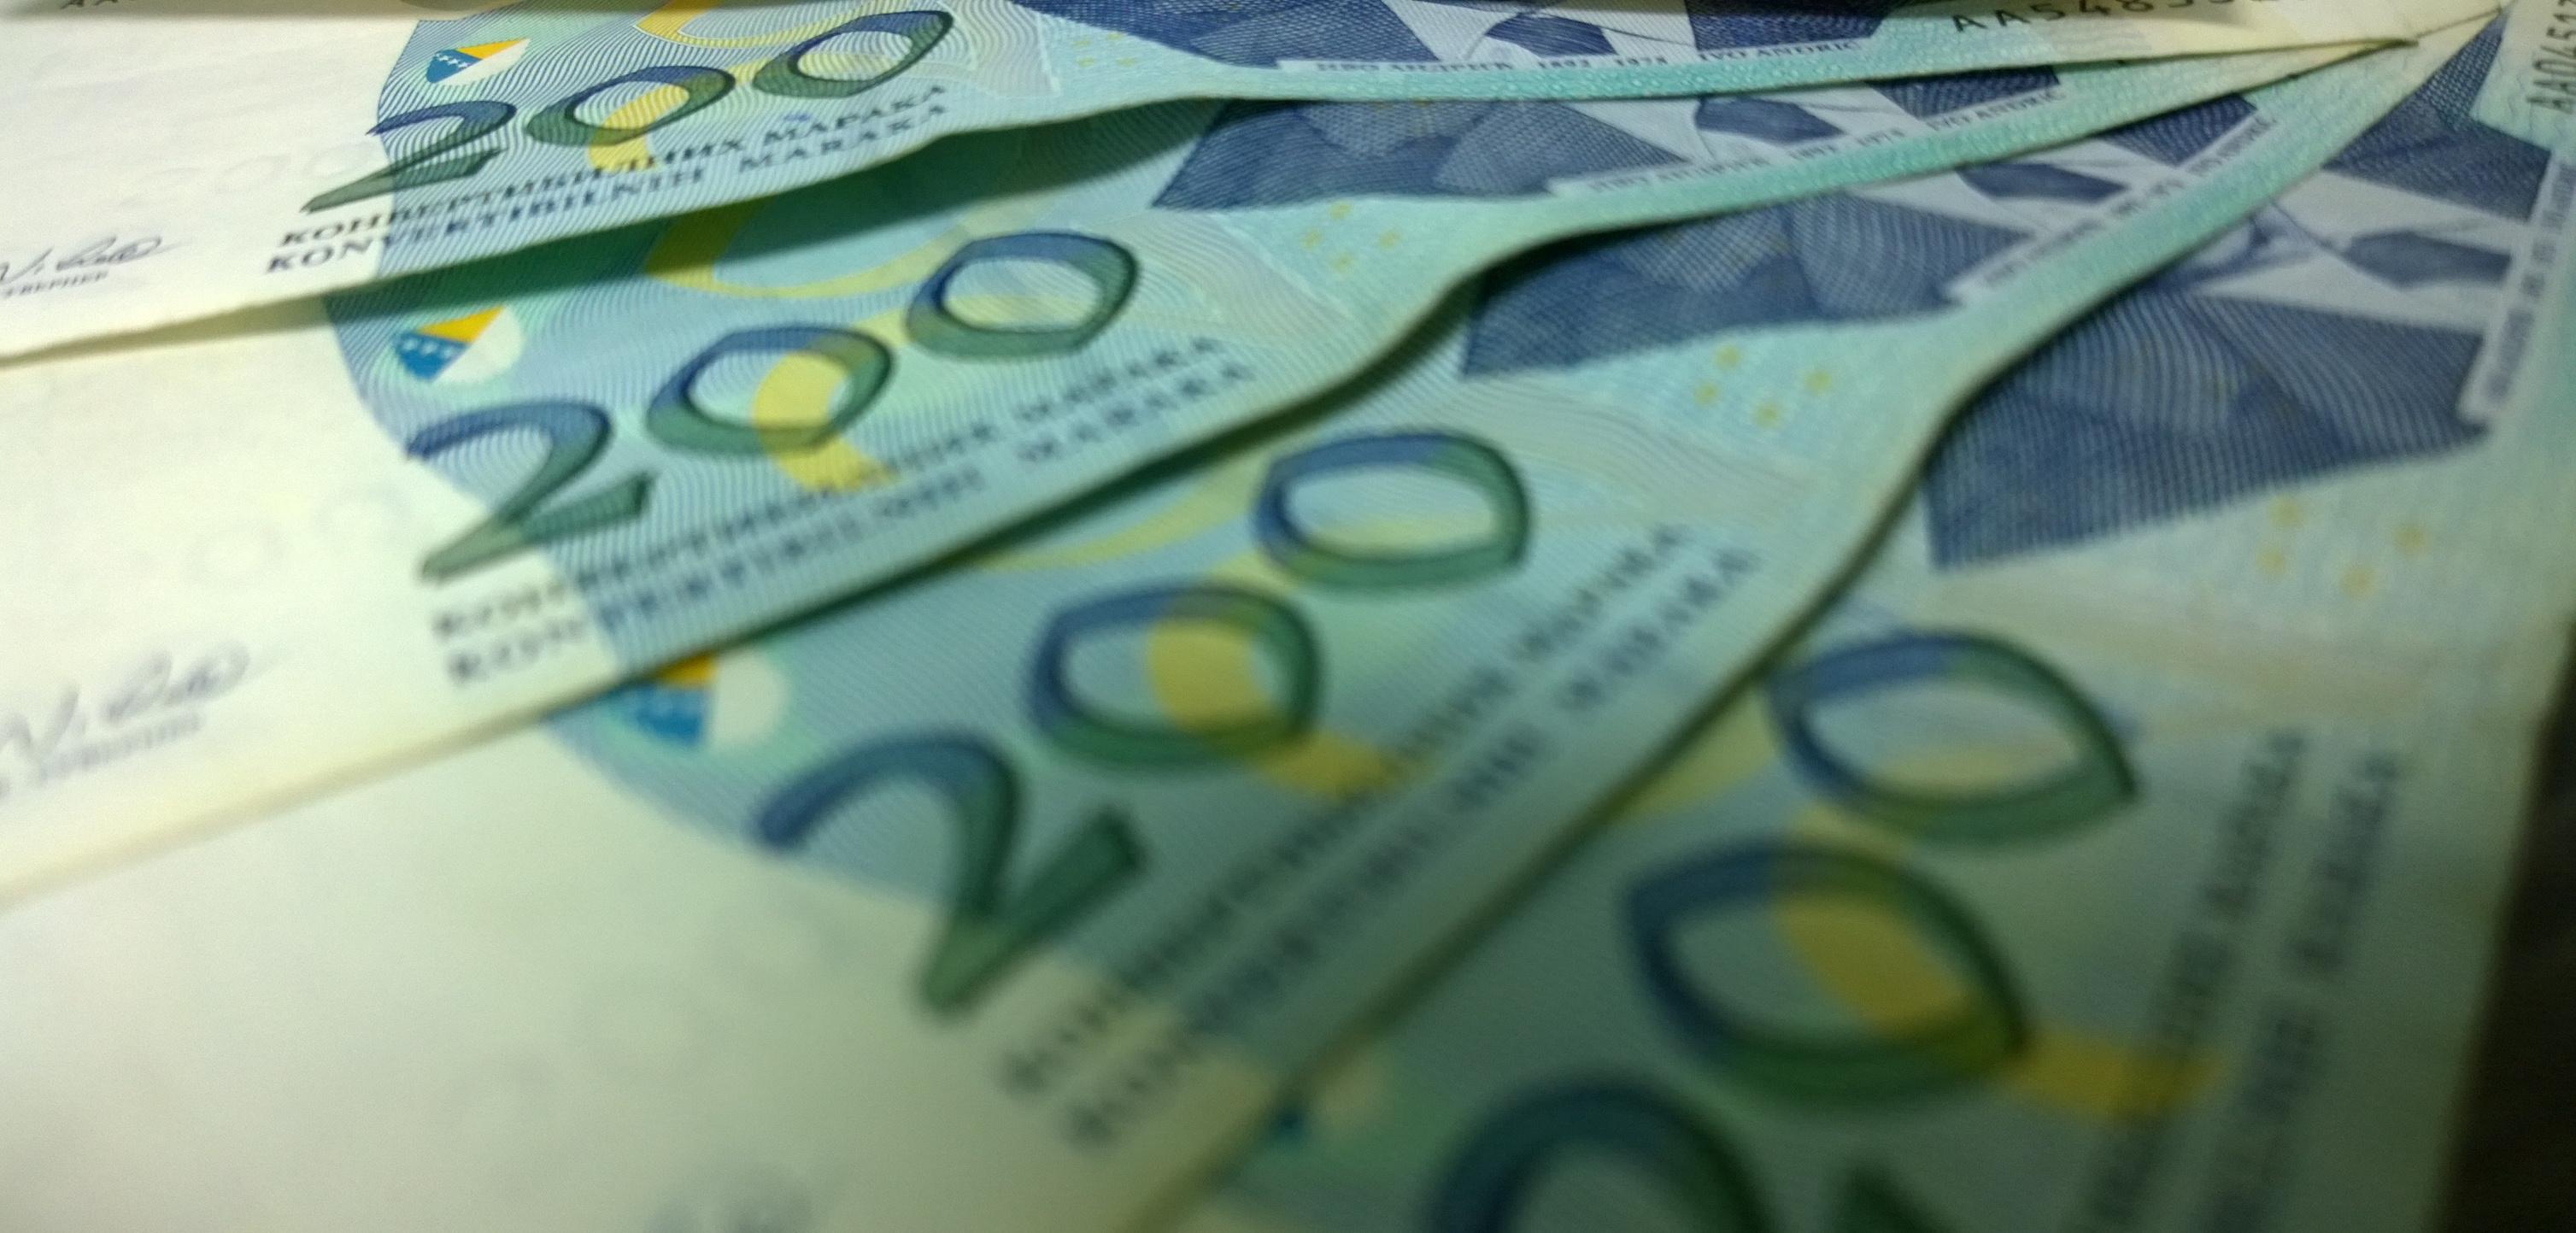 U BiH prošle godine dodijeljeno više od 341 milion KM državne pomoći